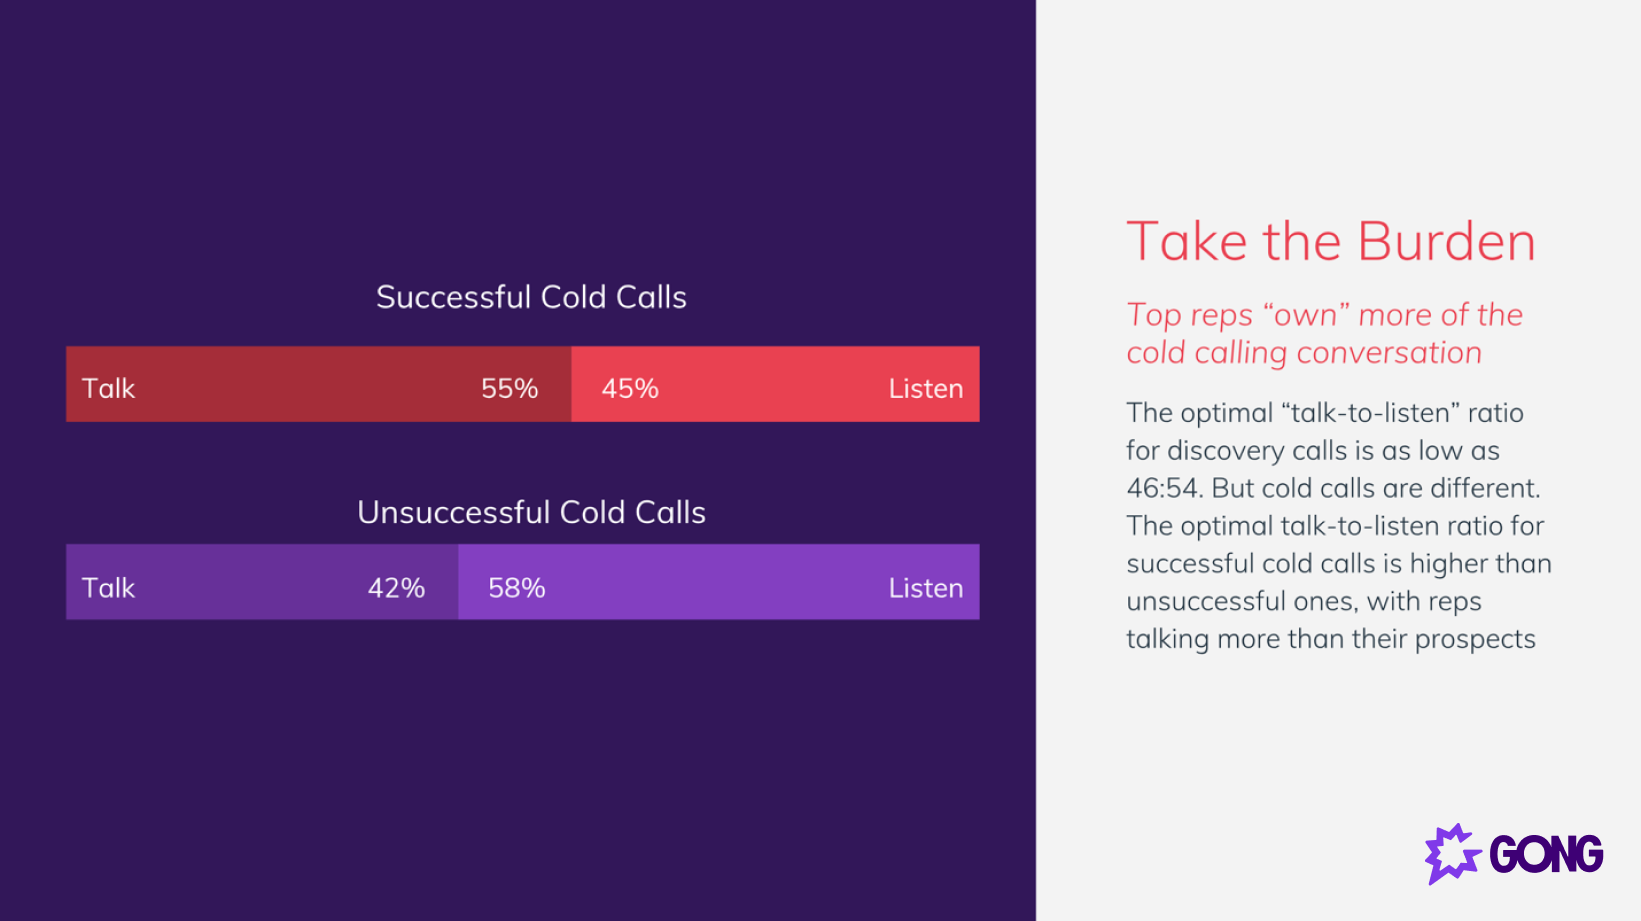 Reps talk more on successful cold calls